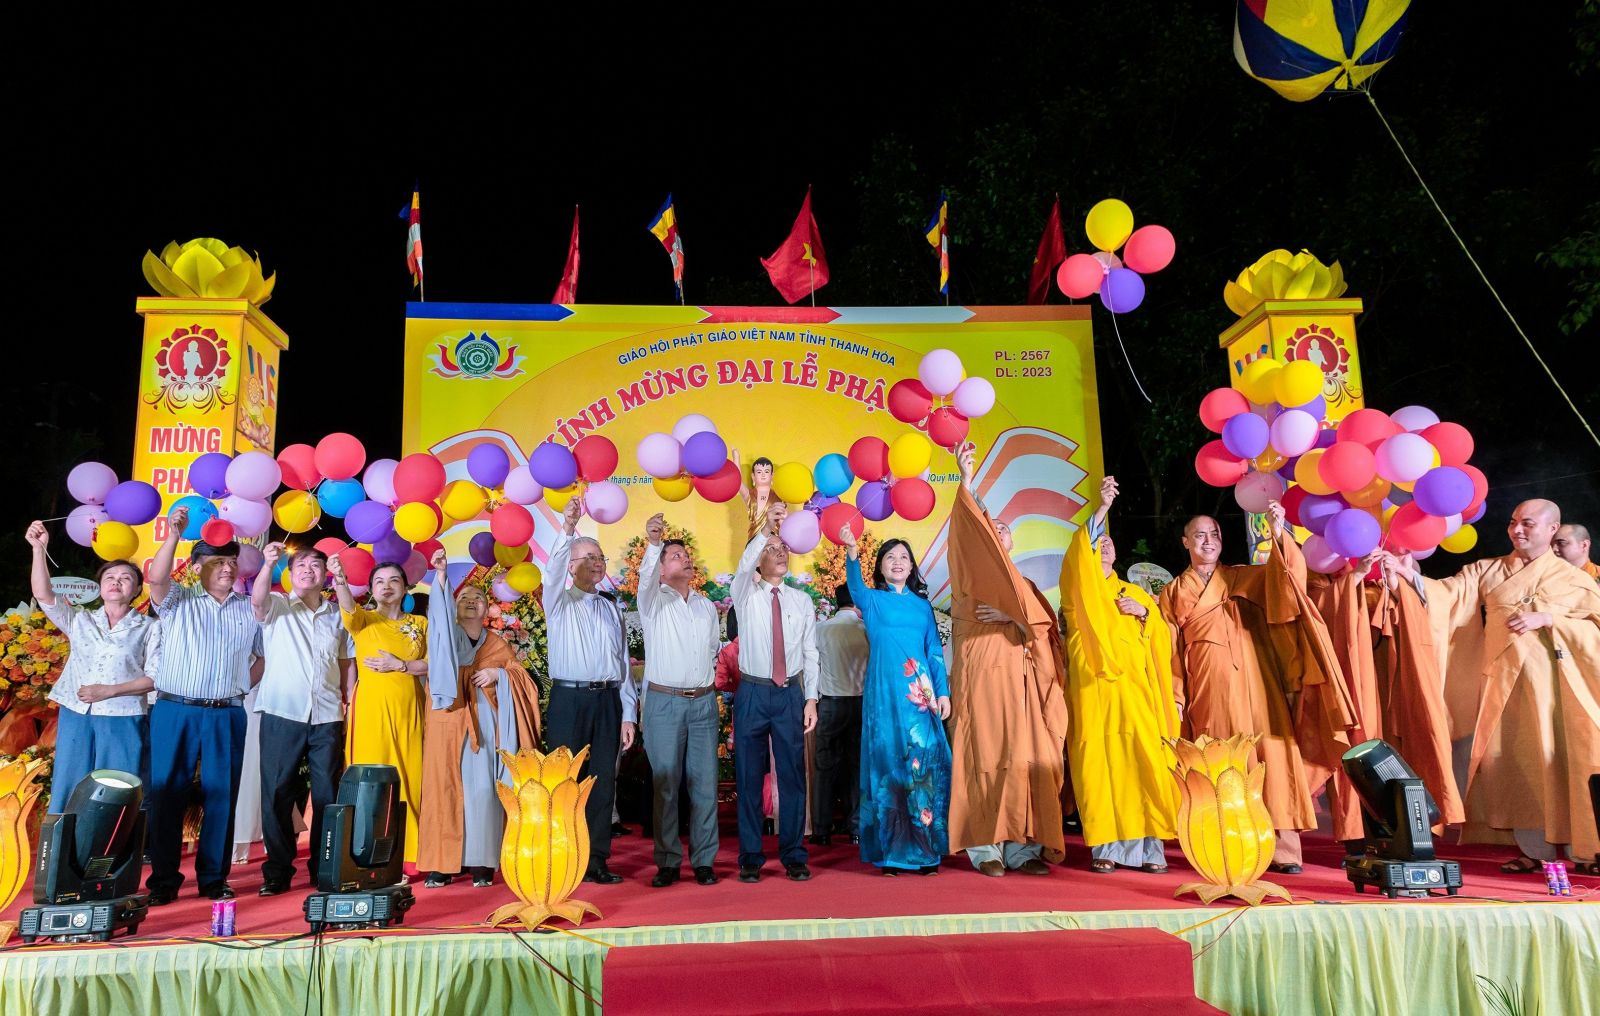 Phật giáo tỉnh Thanh Hóa trang nghiêm tổ chức Đại lễ Phật đản Phật lịch 2567